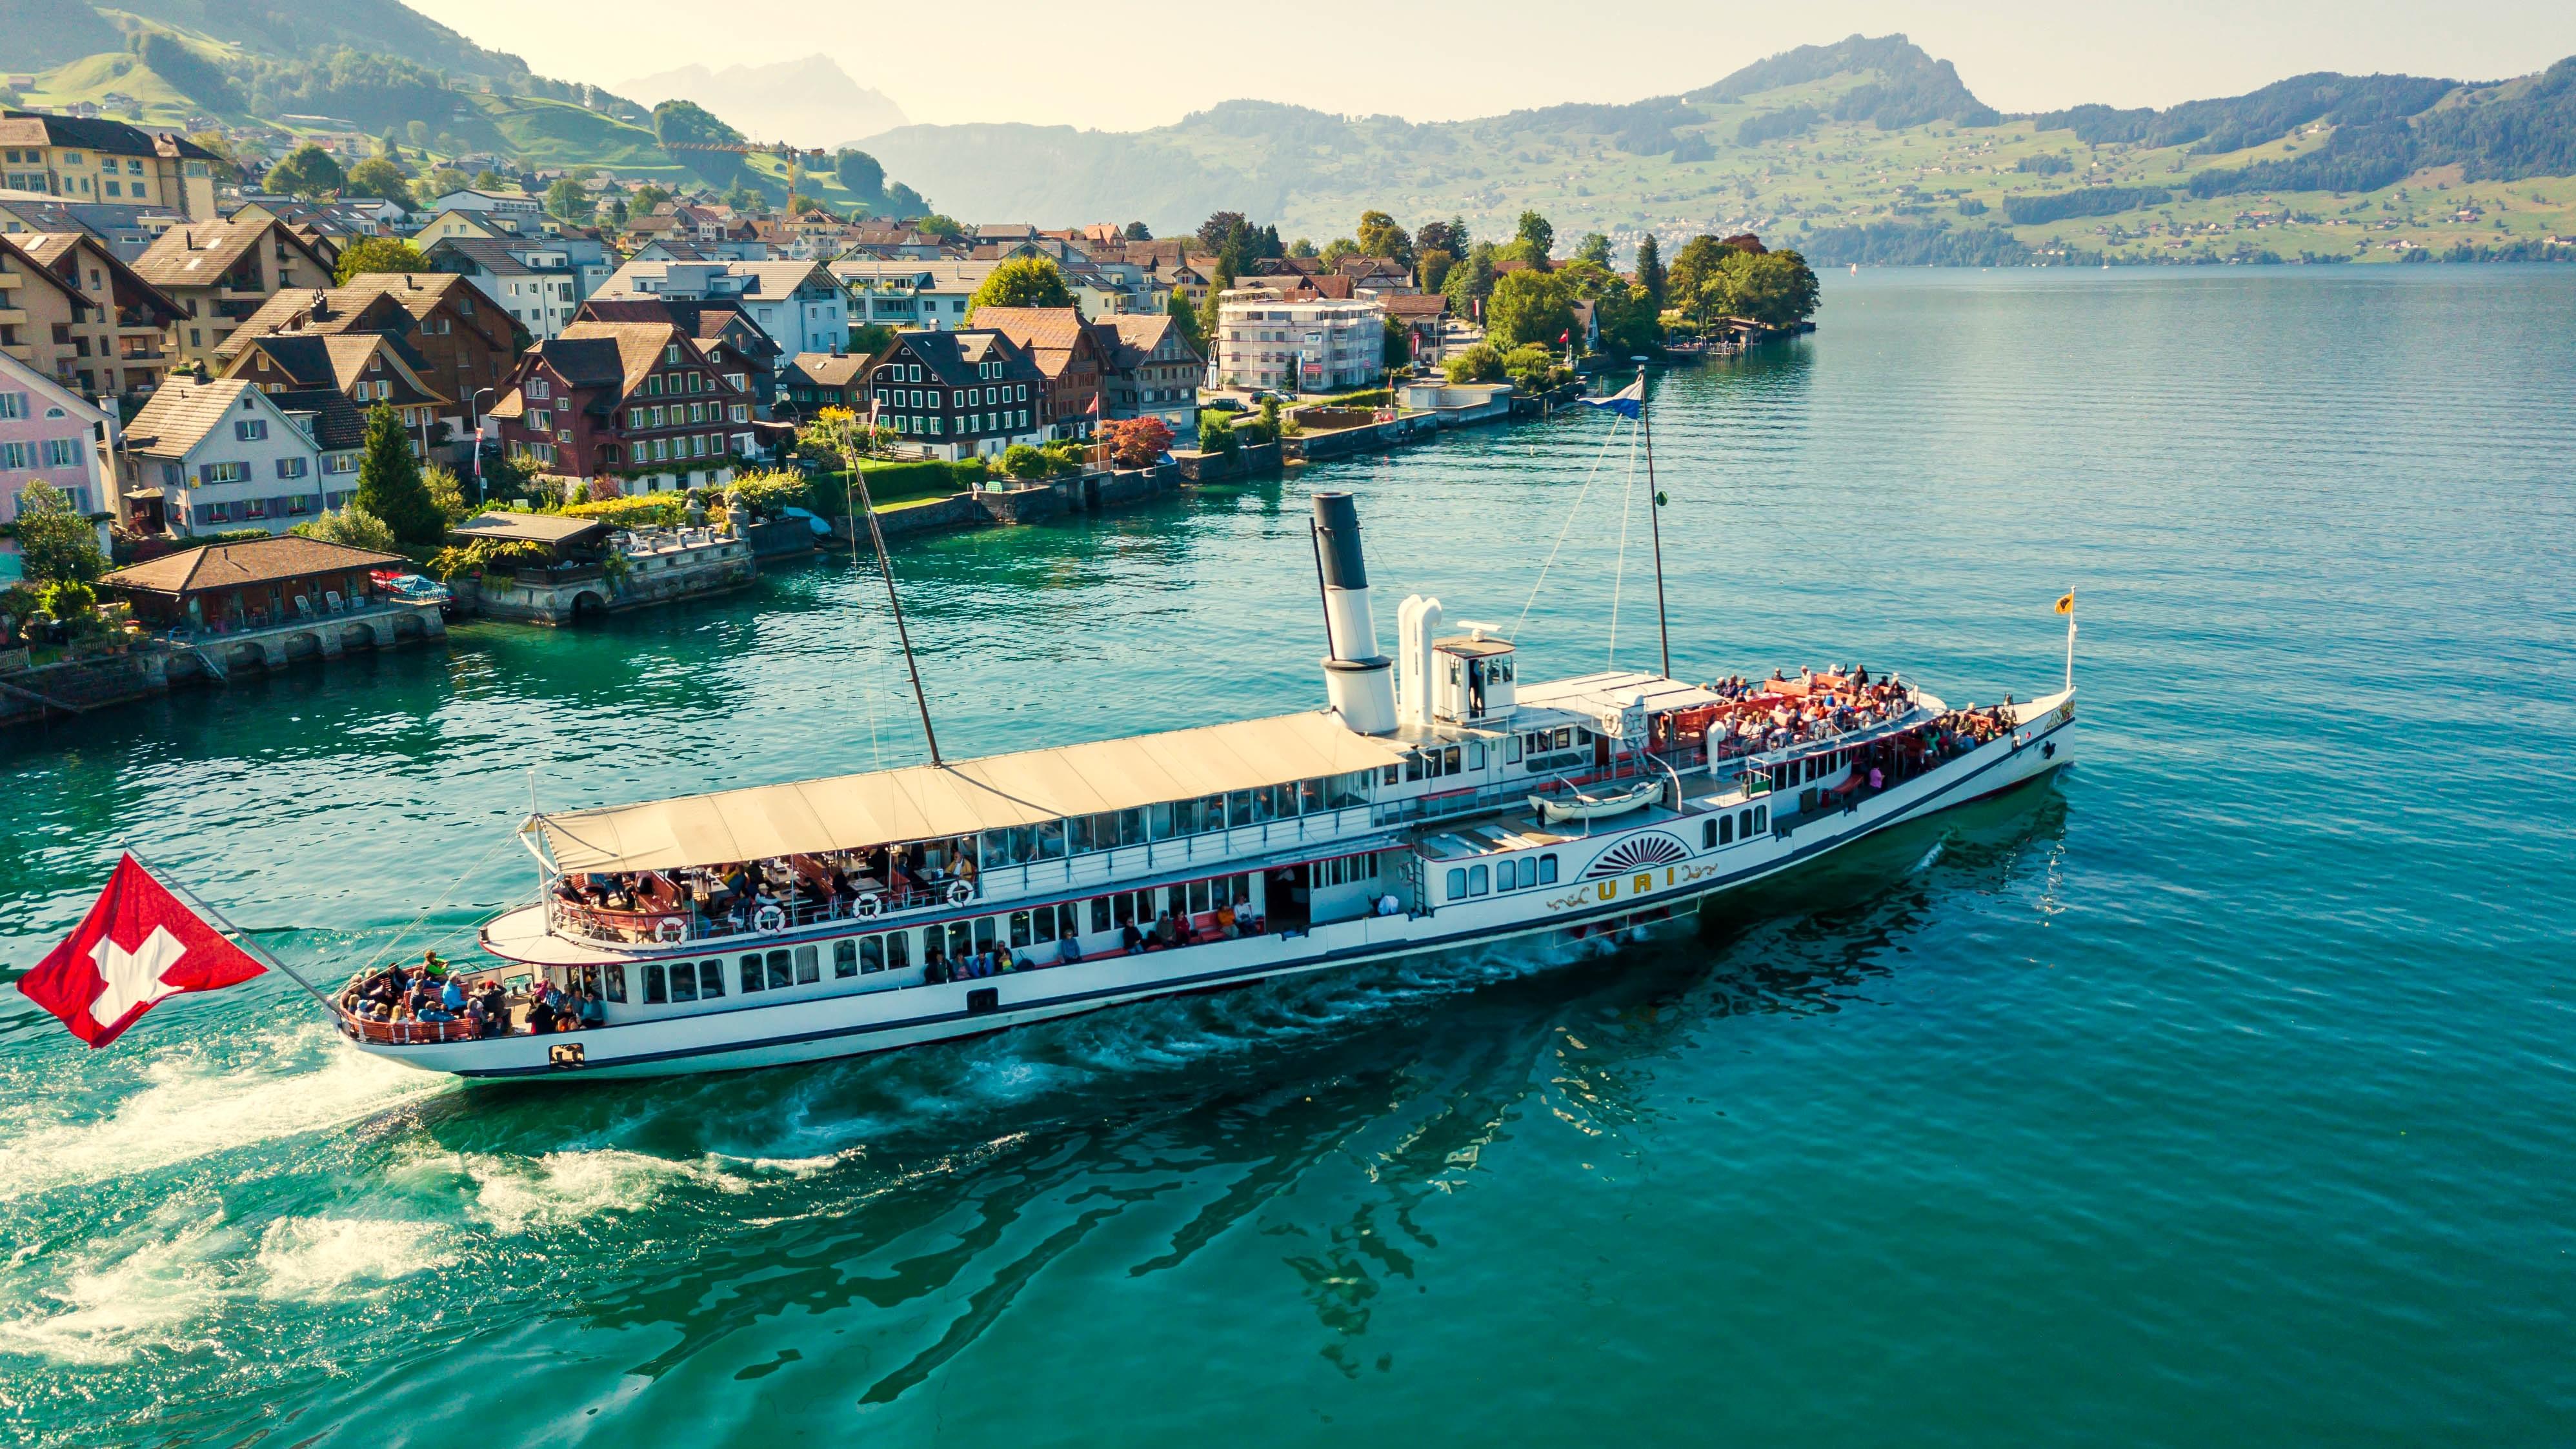 Cruise along Lake Lucerne